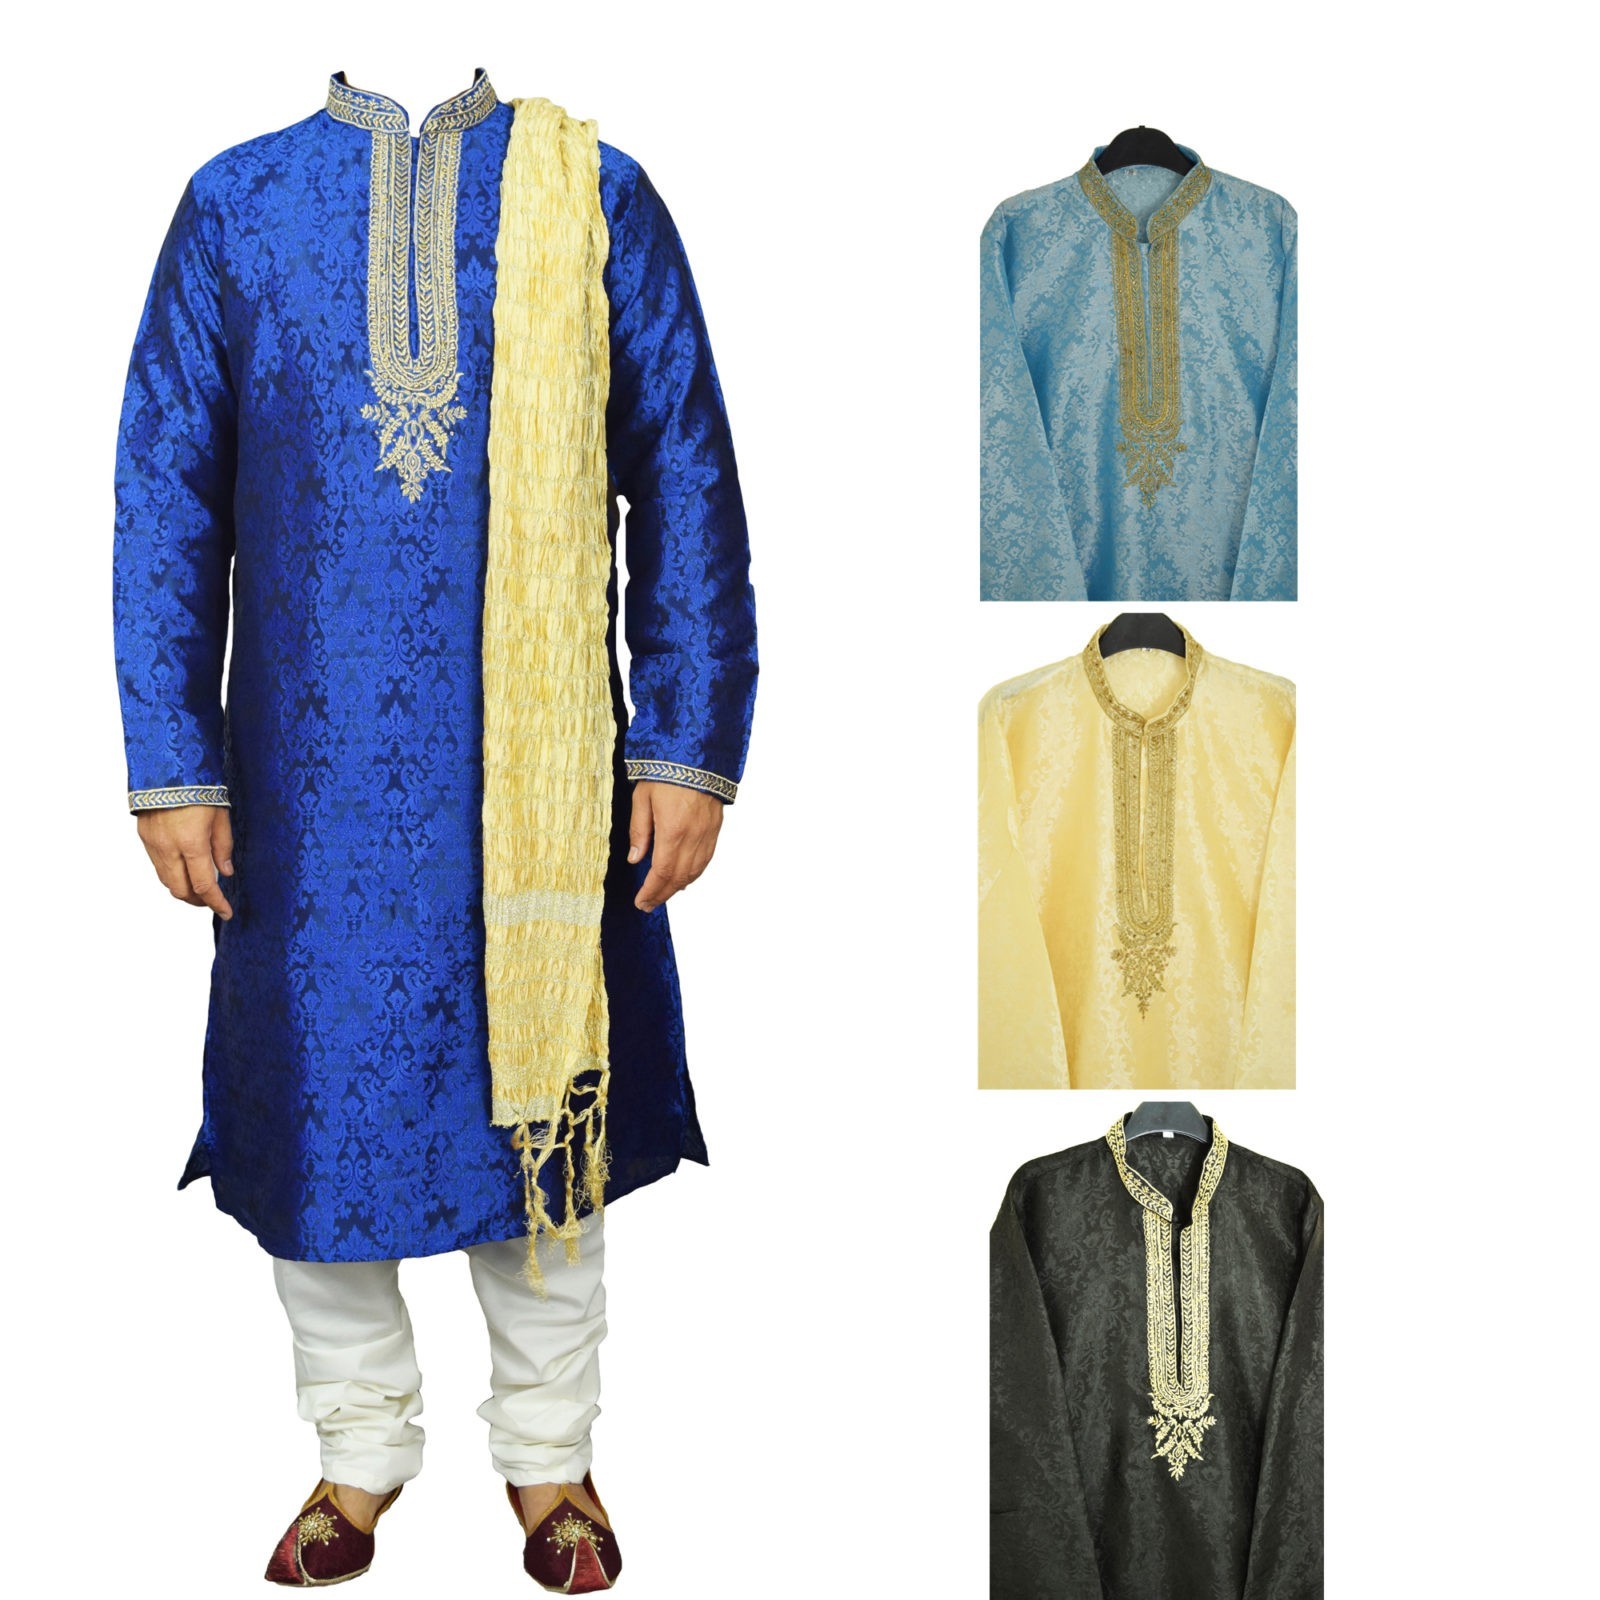 Men’s Indian Jacquard Kurta Pajama Sherwani Traditional Outfit GR860 1